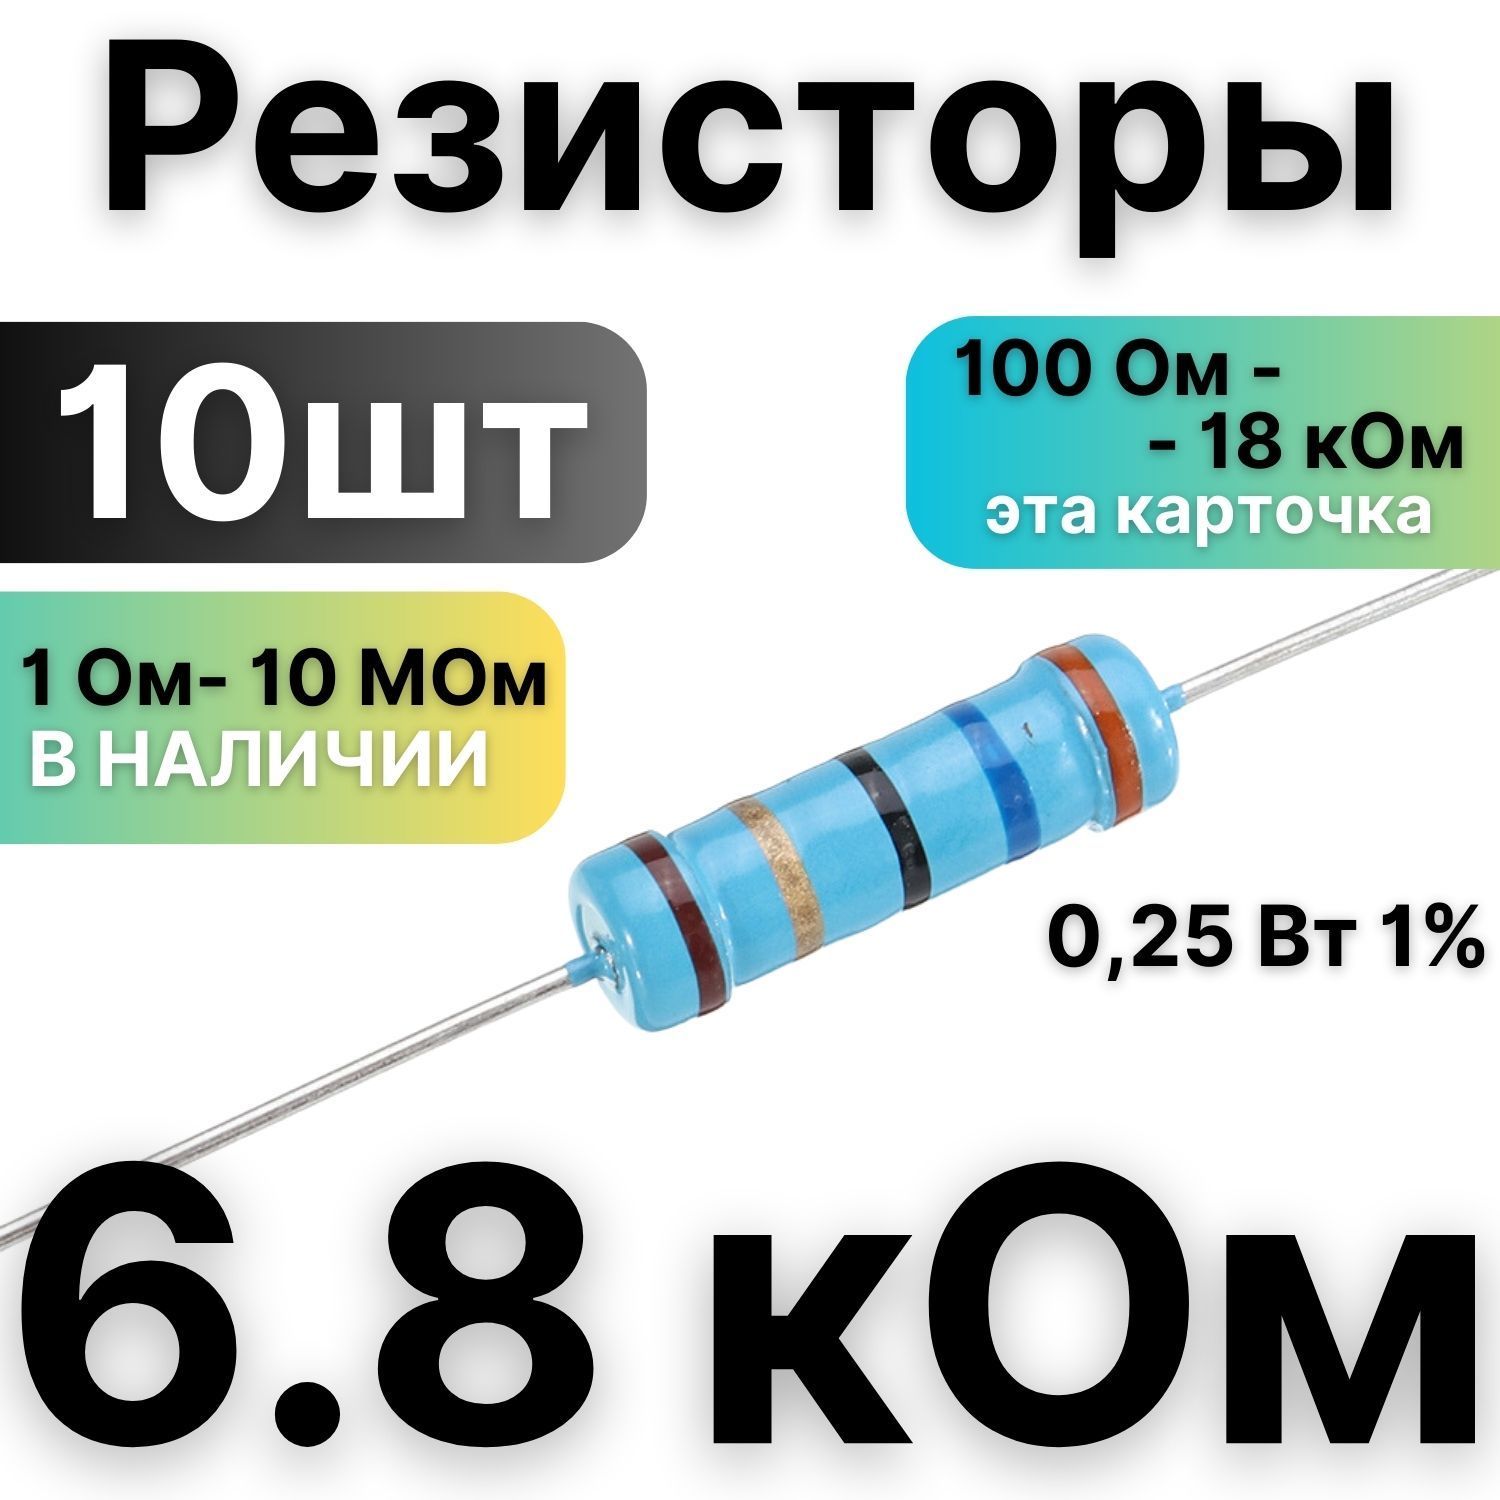 Резистор6.8кОм,1/4Вт,1%металлоплёночный,10шт